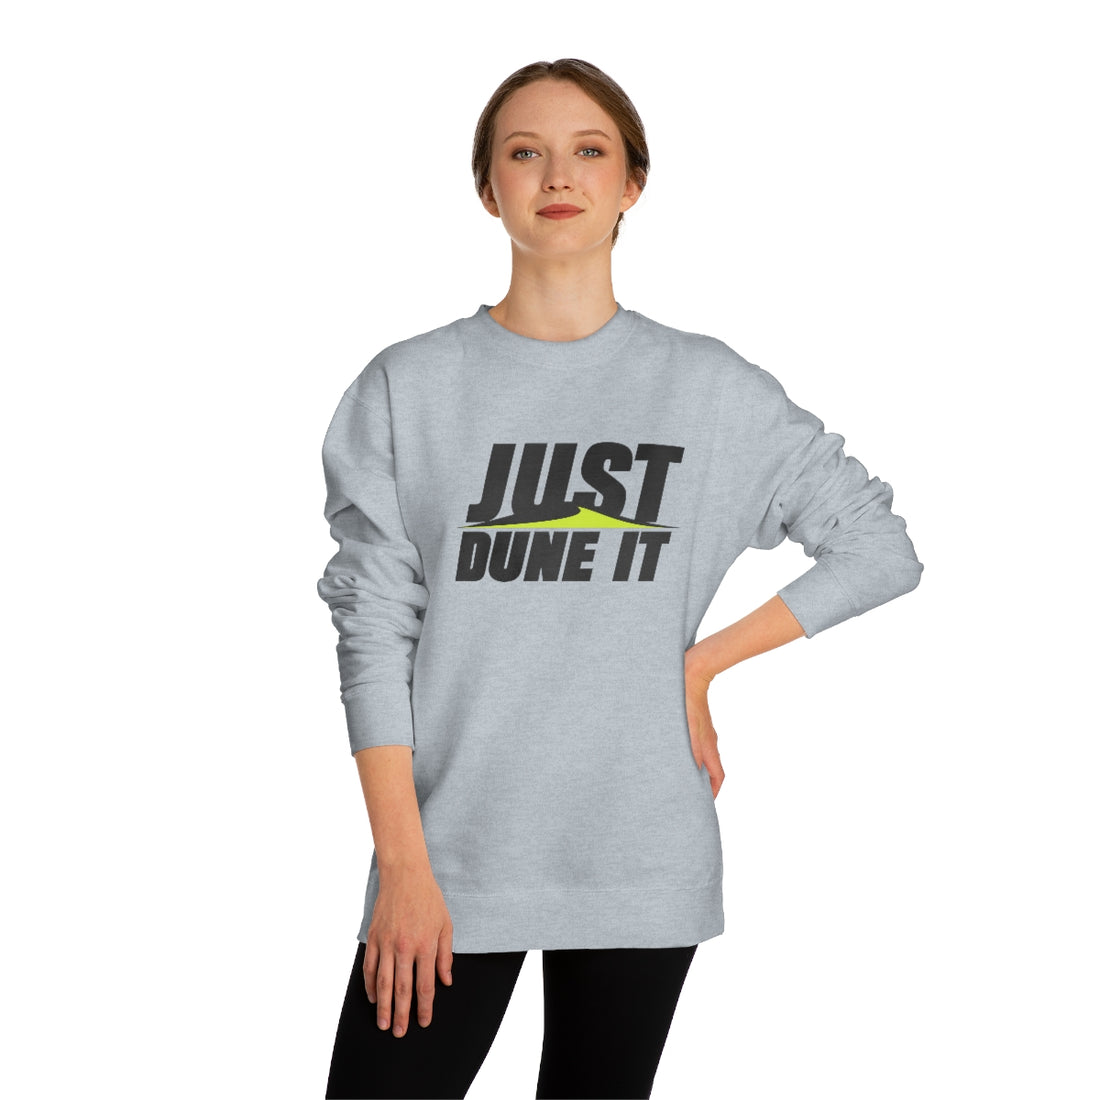 Just Dune It - Unisex Crew Neck Sweatshirt